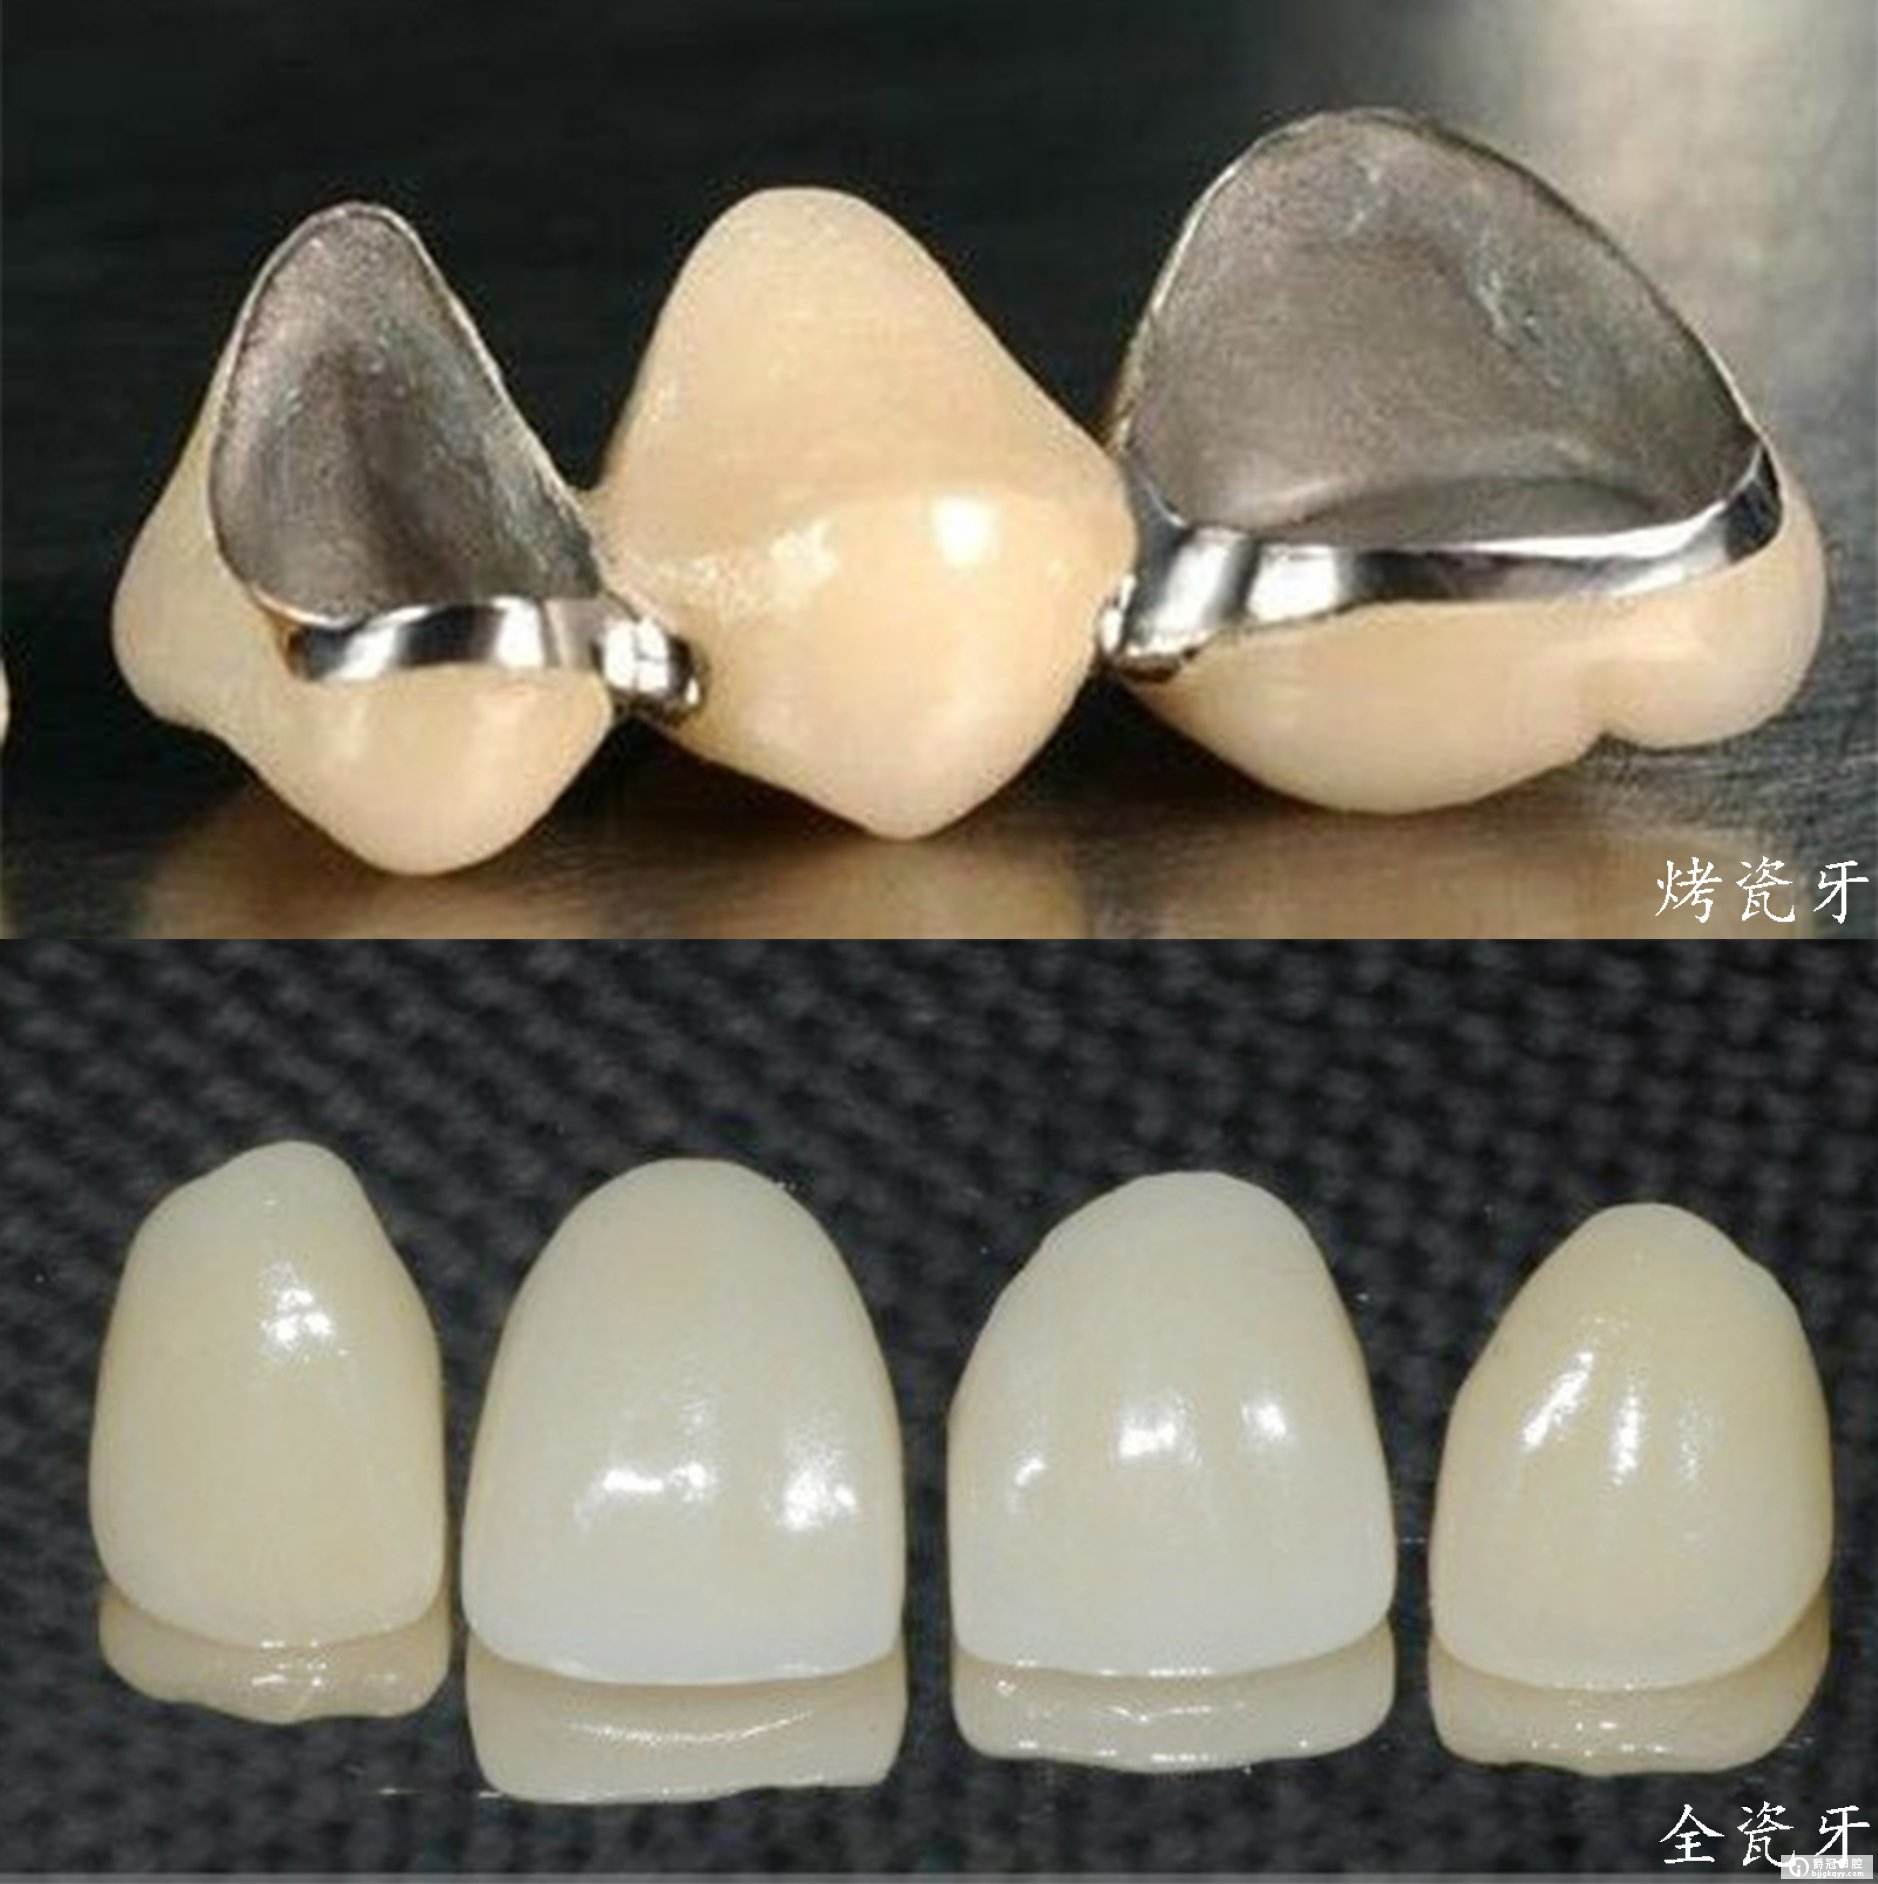 下面小编就为大家详细说明一下烤瓷牙和全瓷牙的联系和区别.